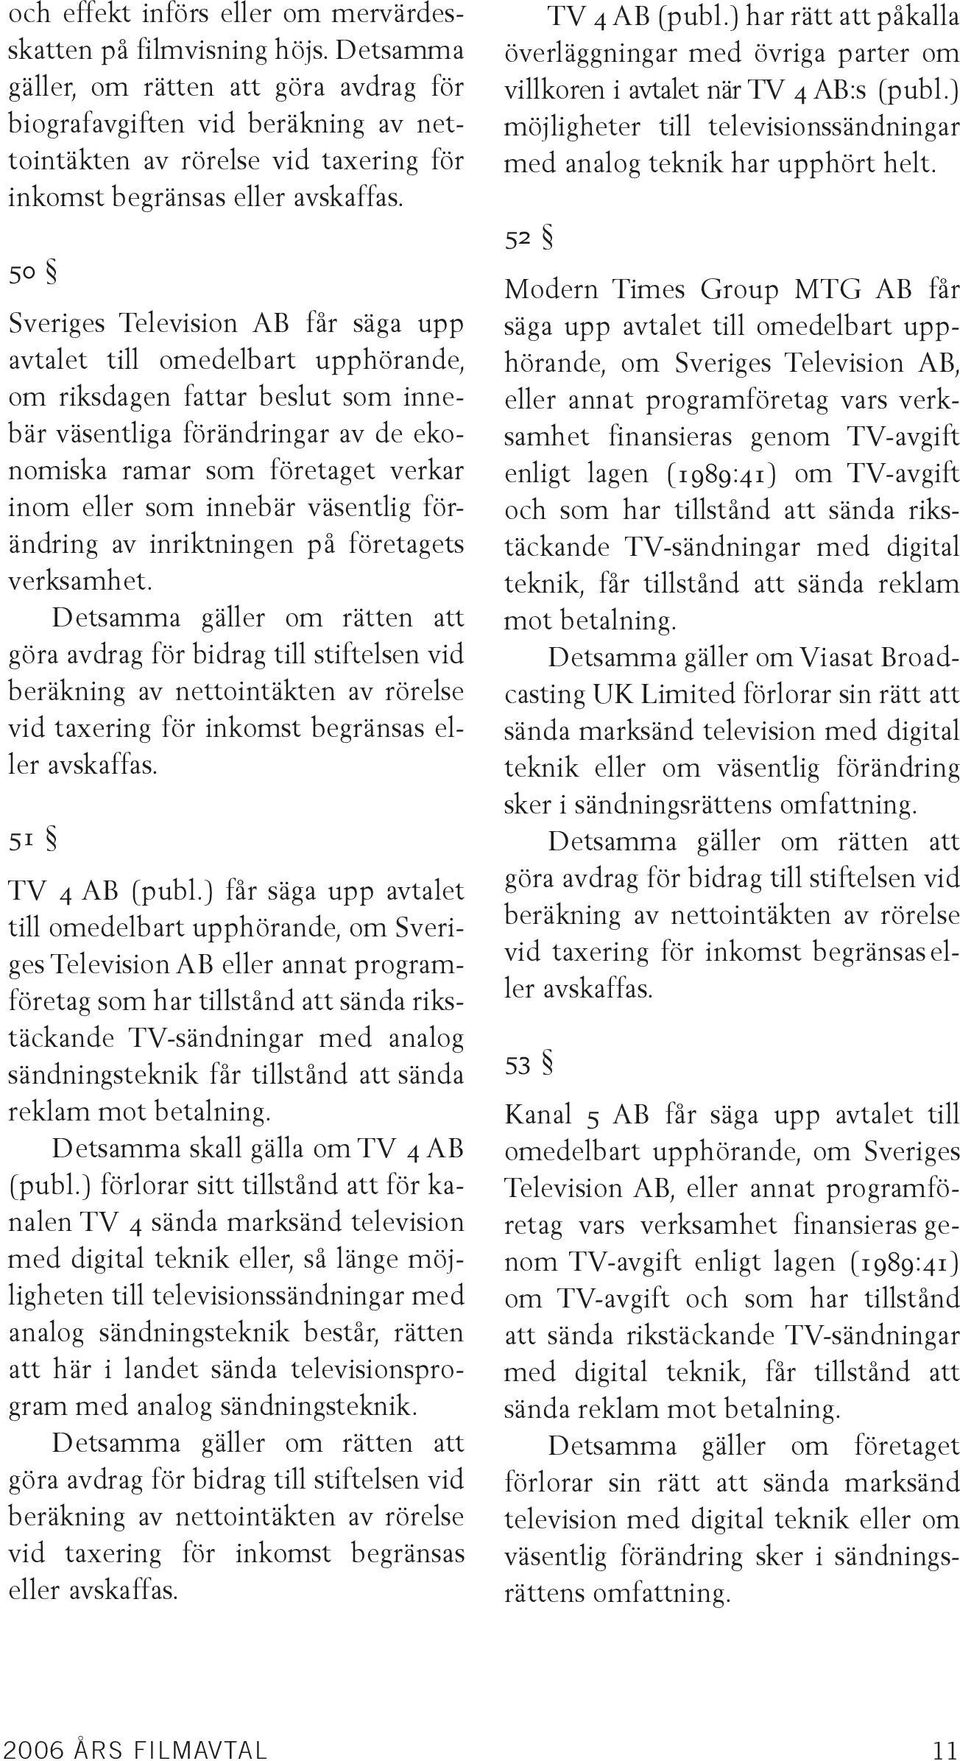 50 Sveriges Television AB får säga upp avtalet till omedelbart upphörande, om riksdagen fattar beslut som innebär väsentliga förändringar av de ekonomiska ramar som företaget verkar inom eller som